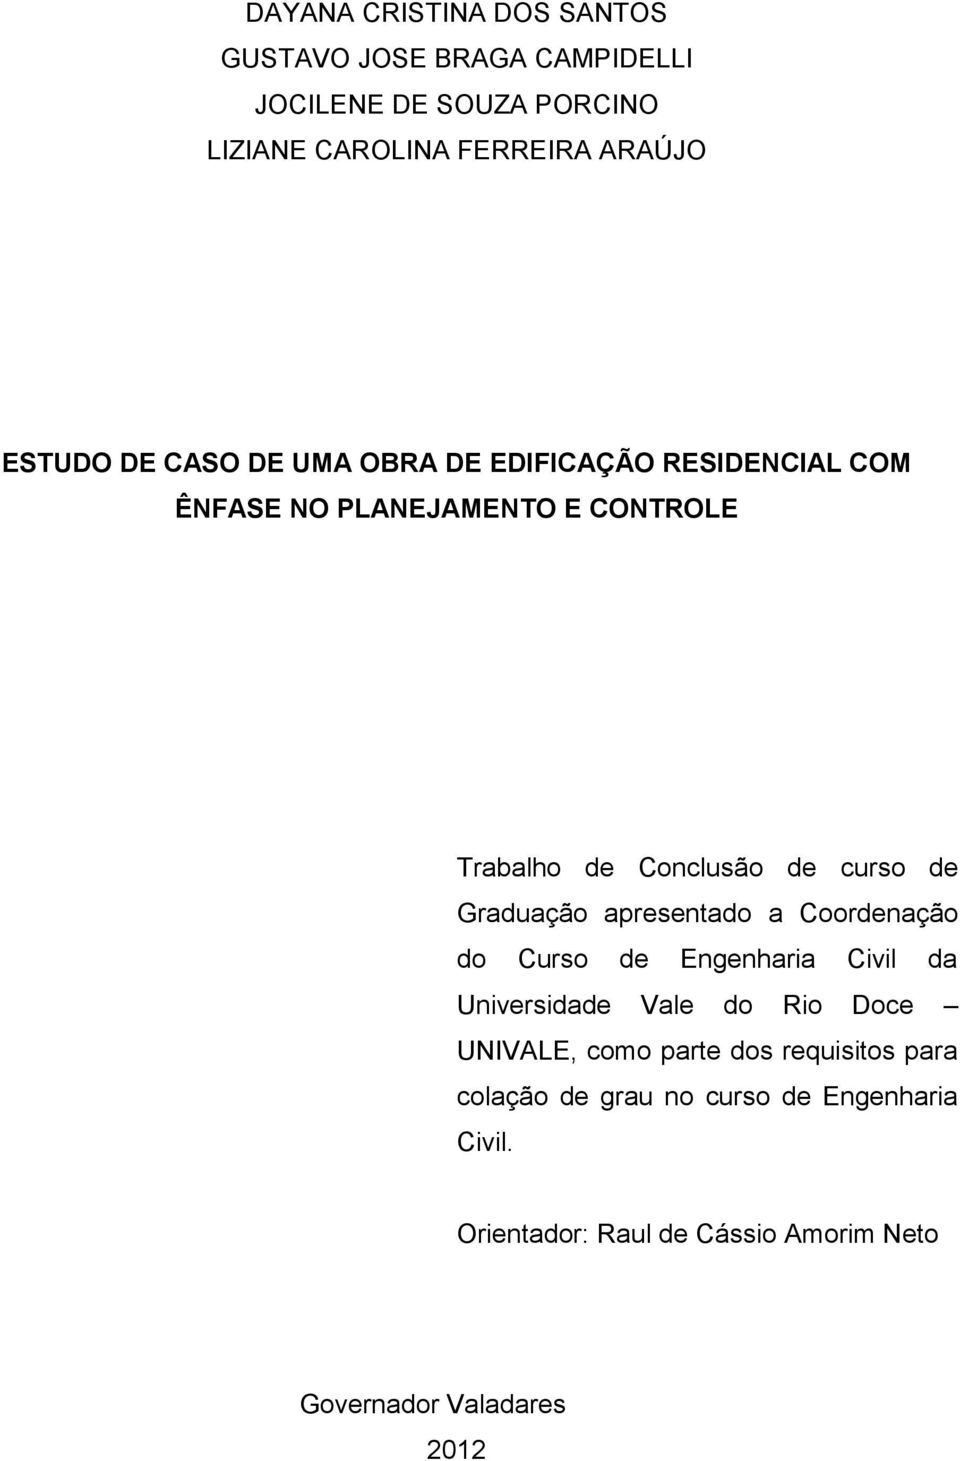 Graduação apresentado a Coordenação do Curso de Engenharia Civil da Universidade Vale do Rio Doce UNIVALE, como parte dos